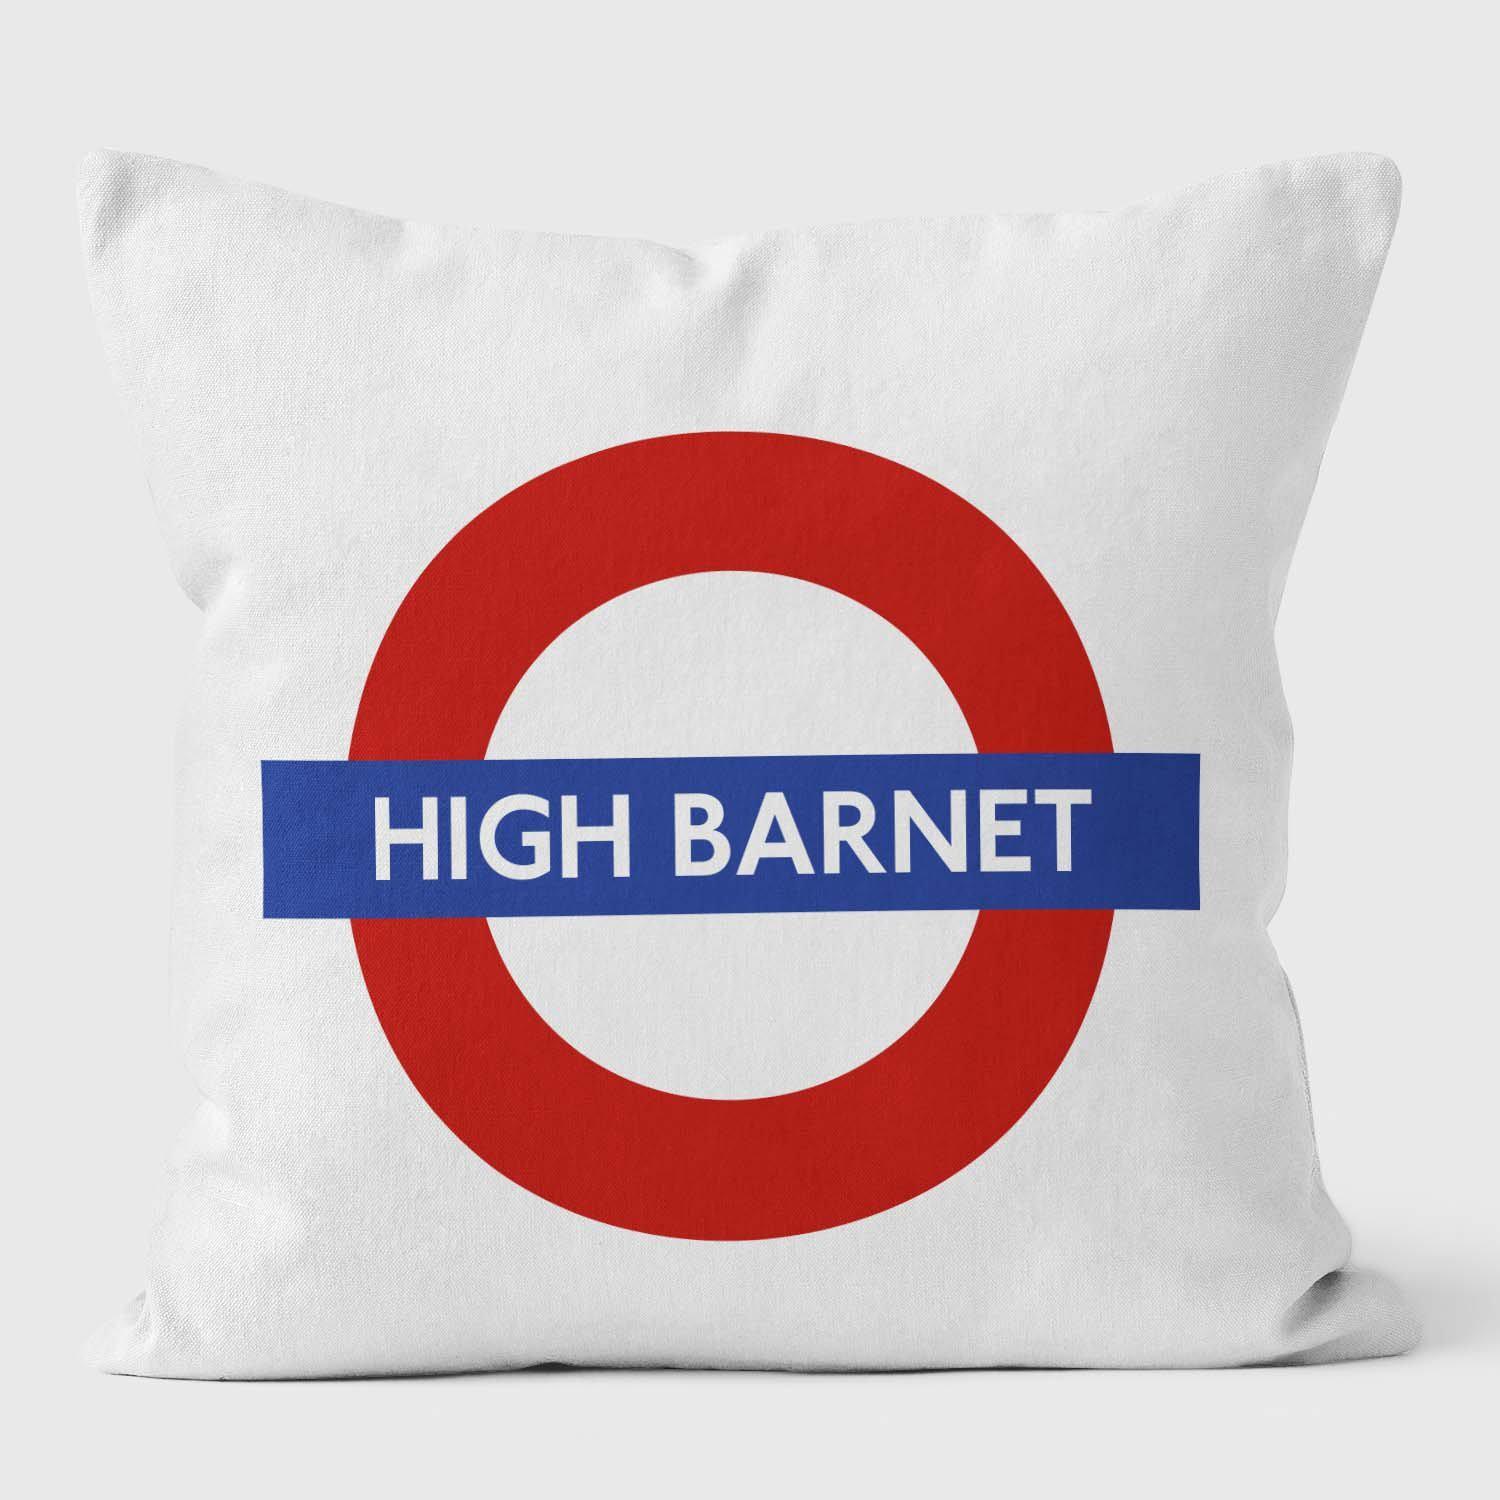 High Barnet London Underground Tube Station Roundel Cushion - Handmade Cushions UK - WeLoveCushions